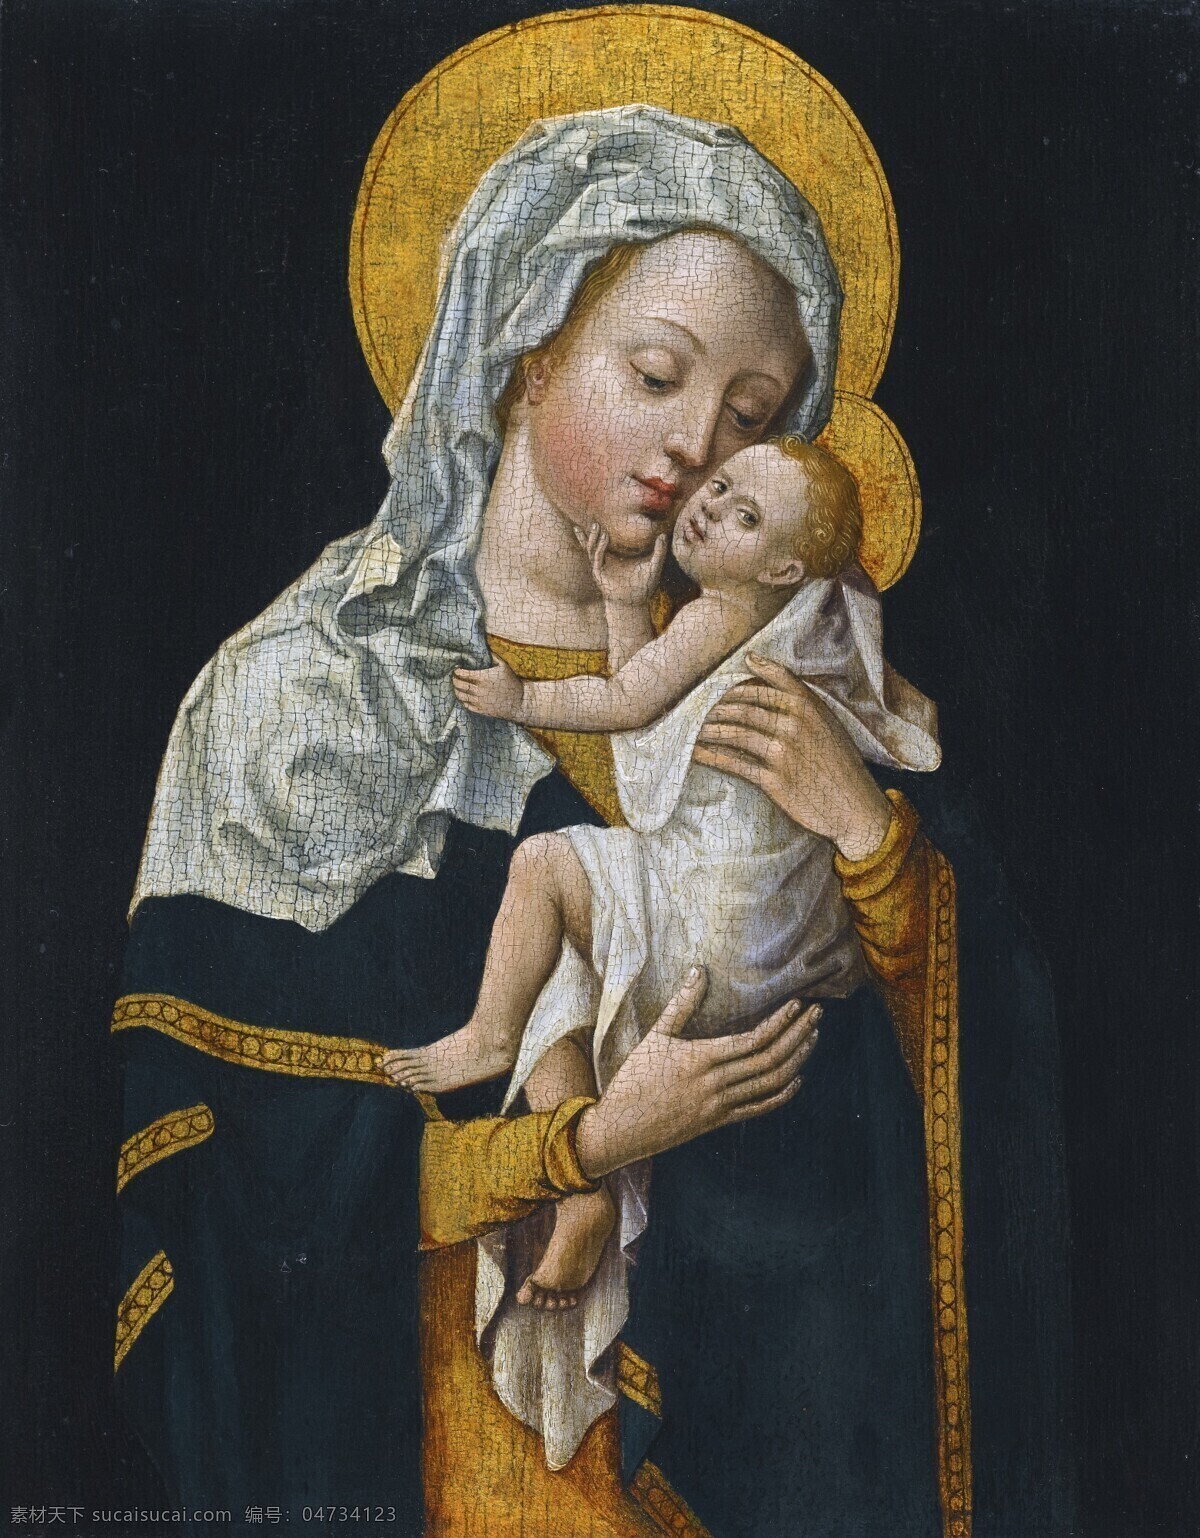 宗教油画 圣母玛丽娅 圣婴耶稣 母与子 母子亲情 古典油画 油画 绘画书法 文化艺术